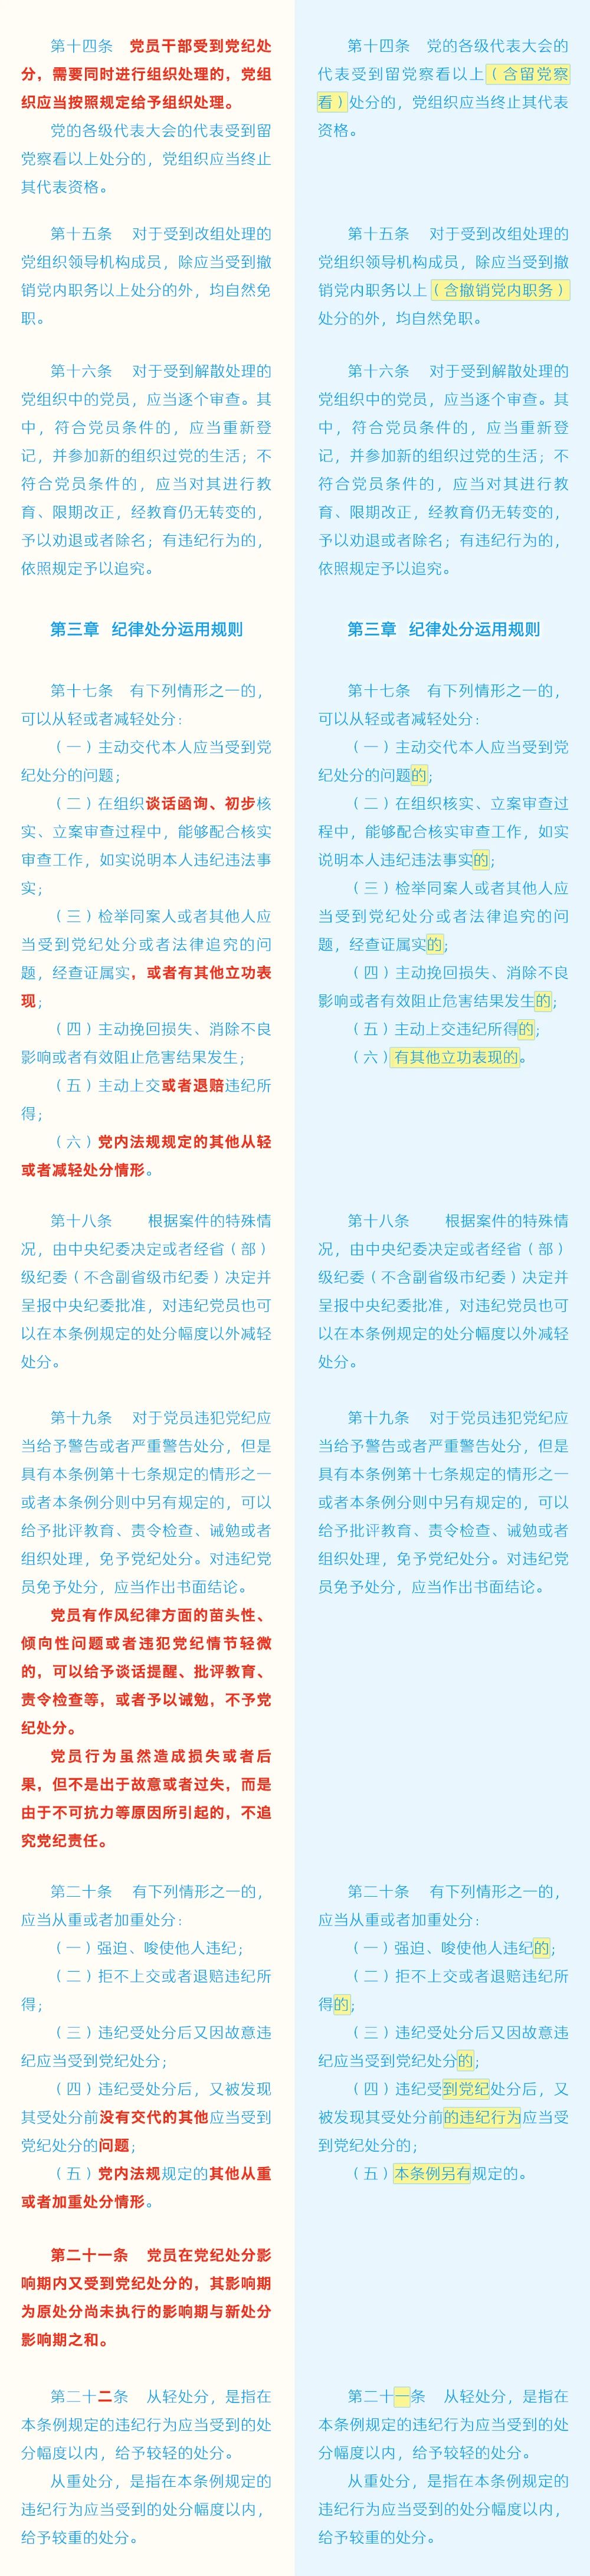 《中国共产党纪律处分条例》修订条文对照表3.jpg